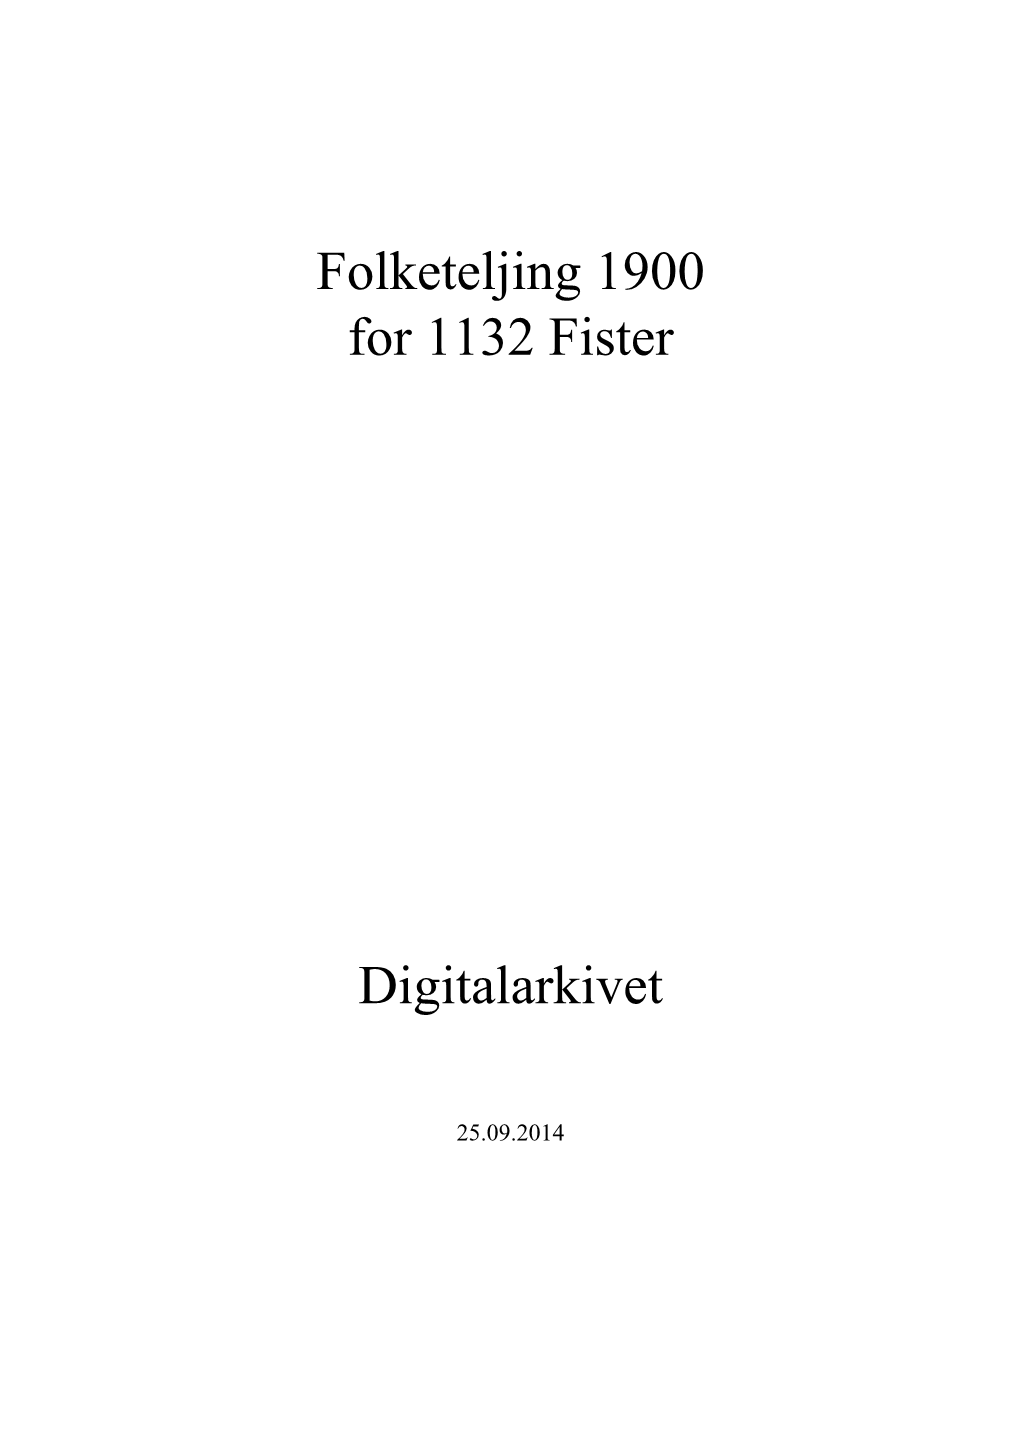 Folketeljing 1900 for 1132 Fister Digitalarkivet